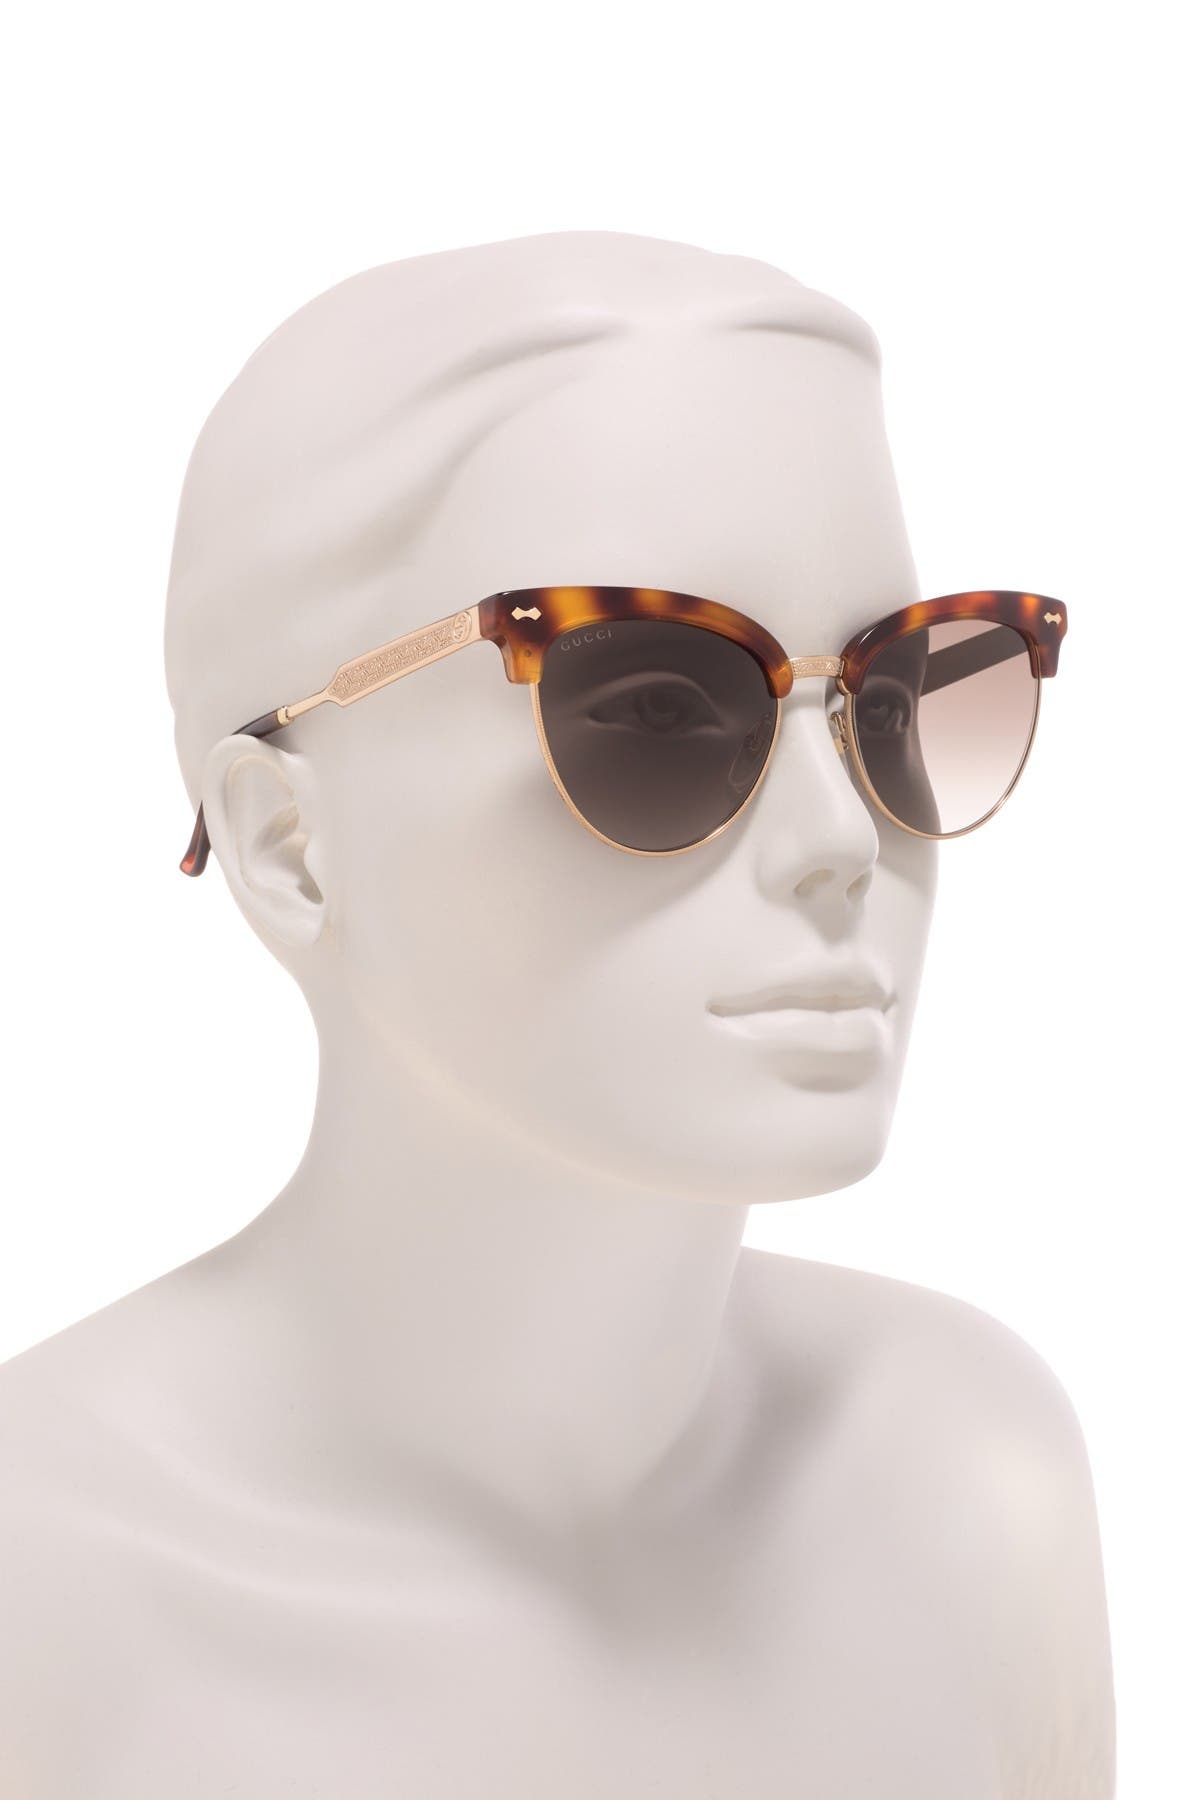 gucci 58mm clubmaster sunglasses